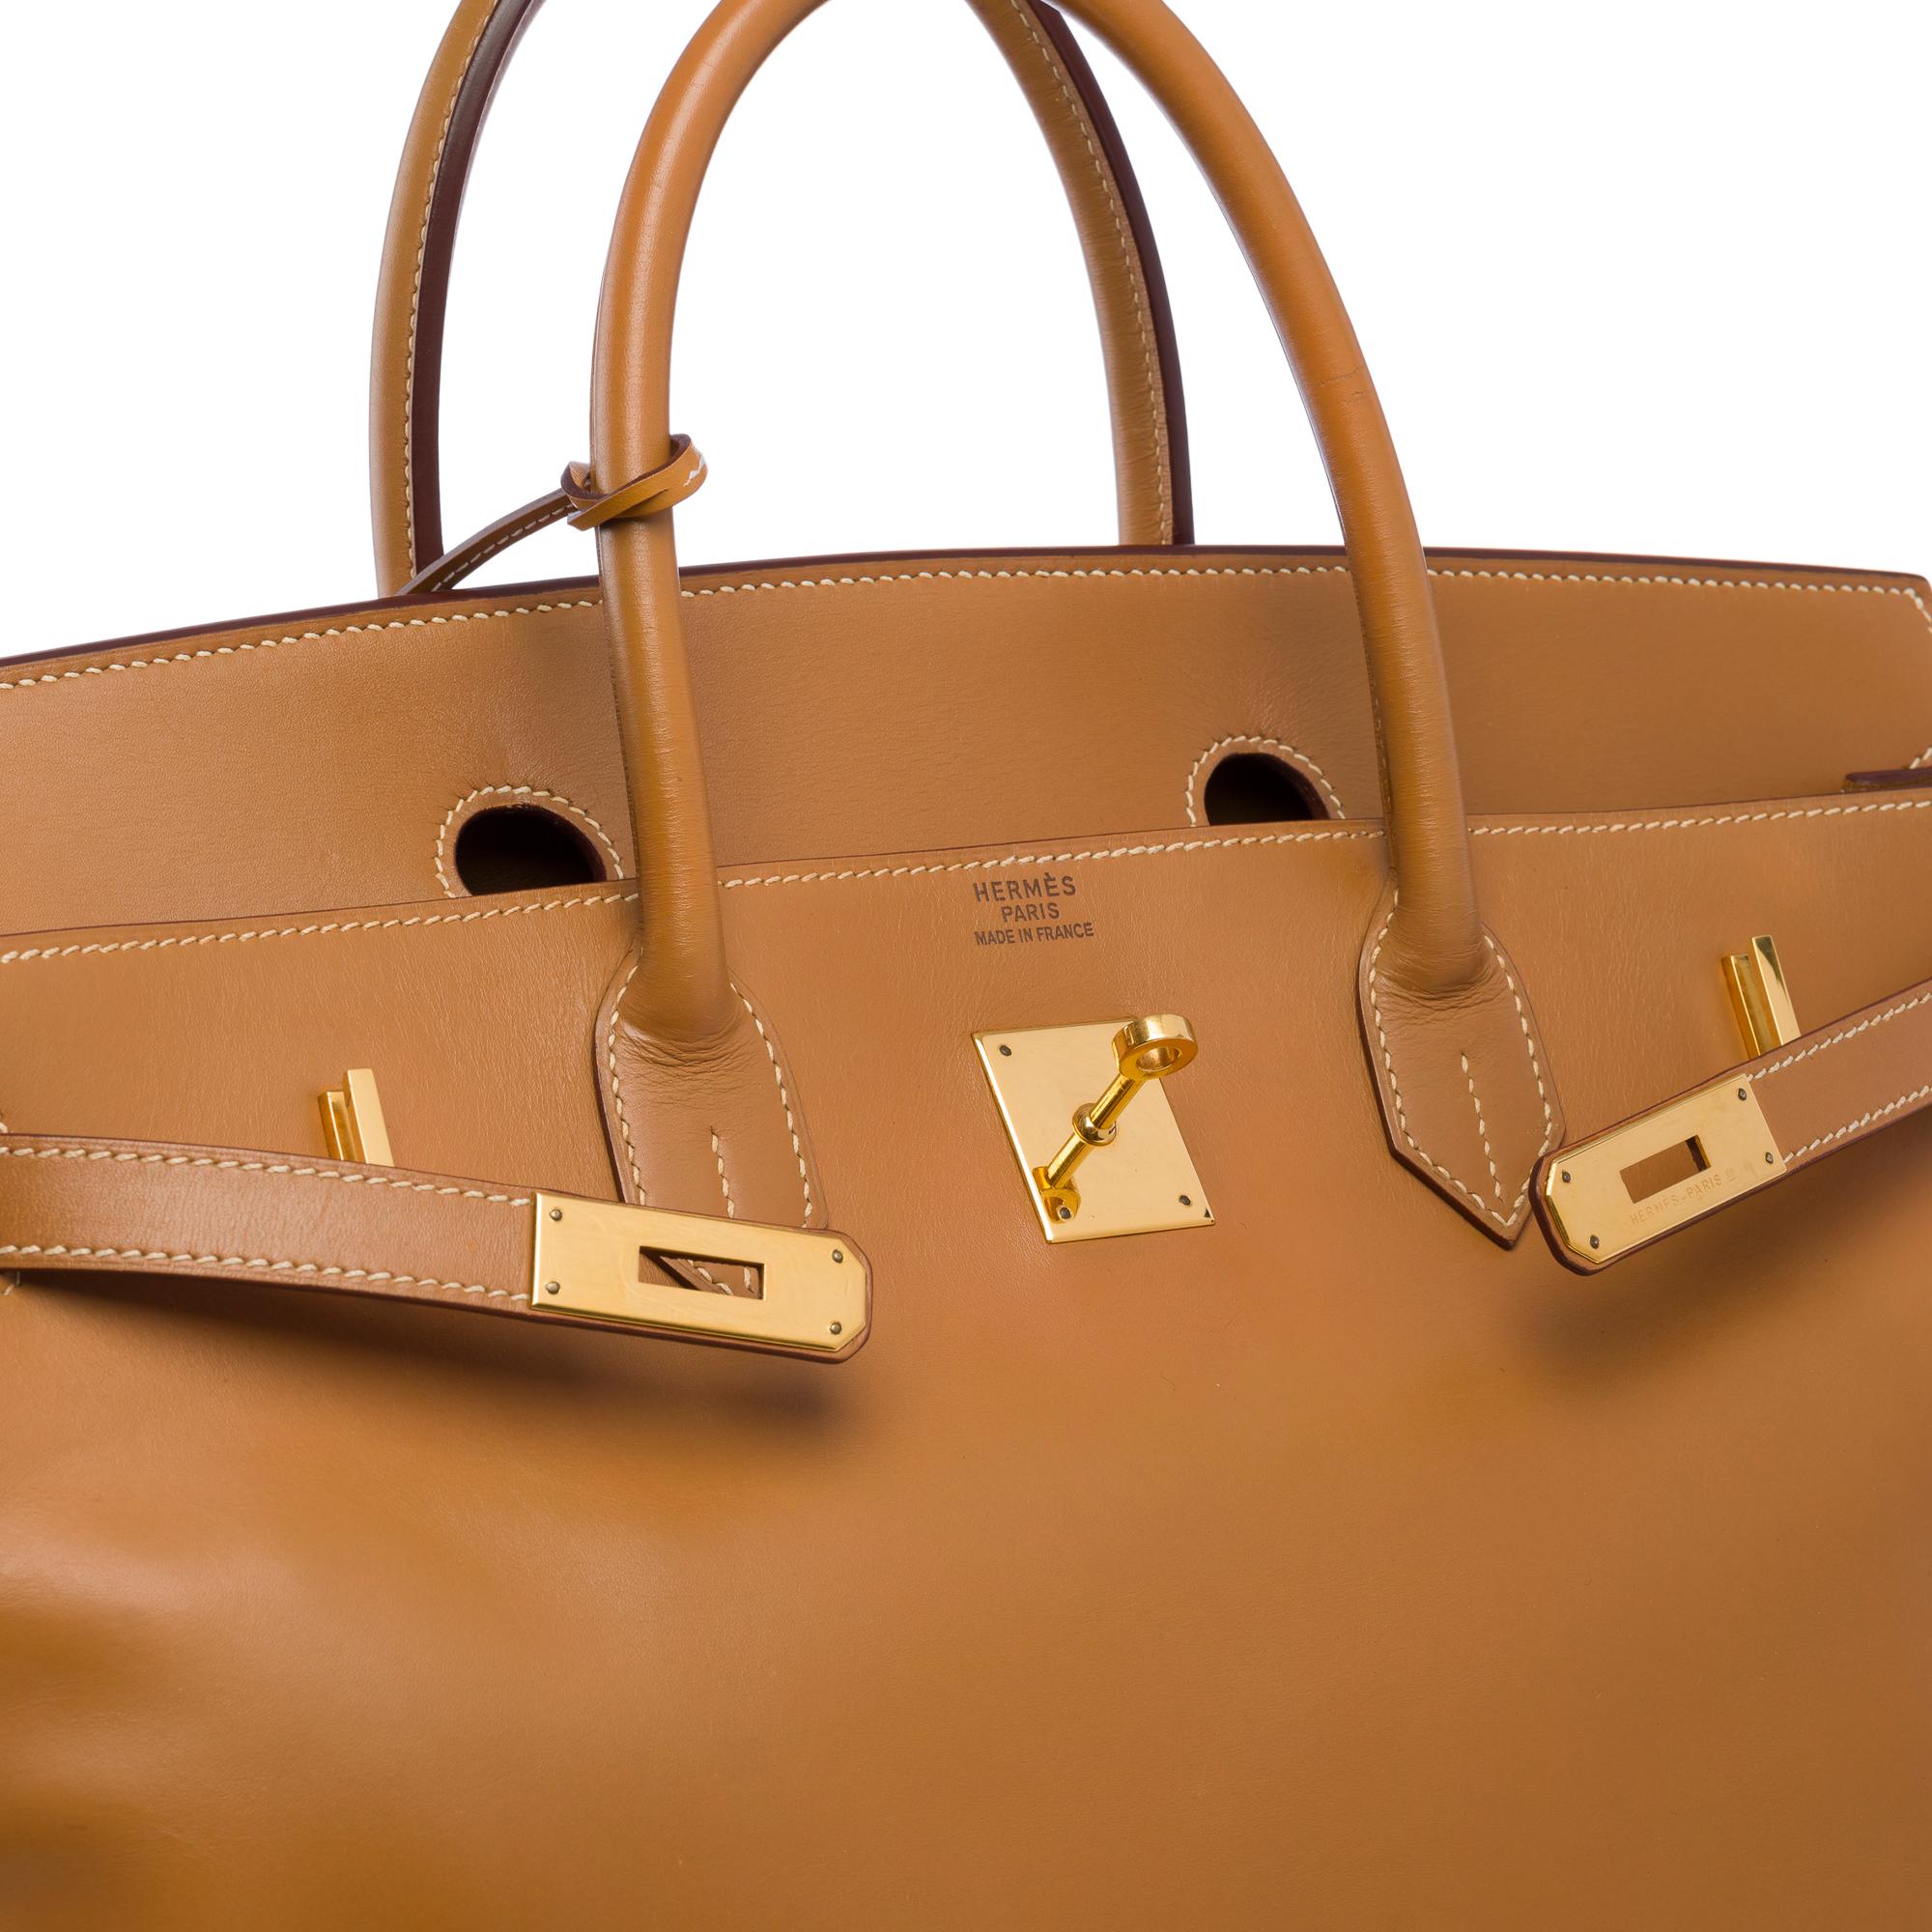 Fantastic Hermes Birkin 40 handbag in Camel (Gold) Chamonix leather, GHW For Sale 1